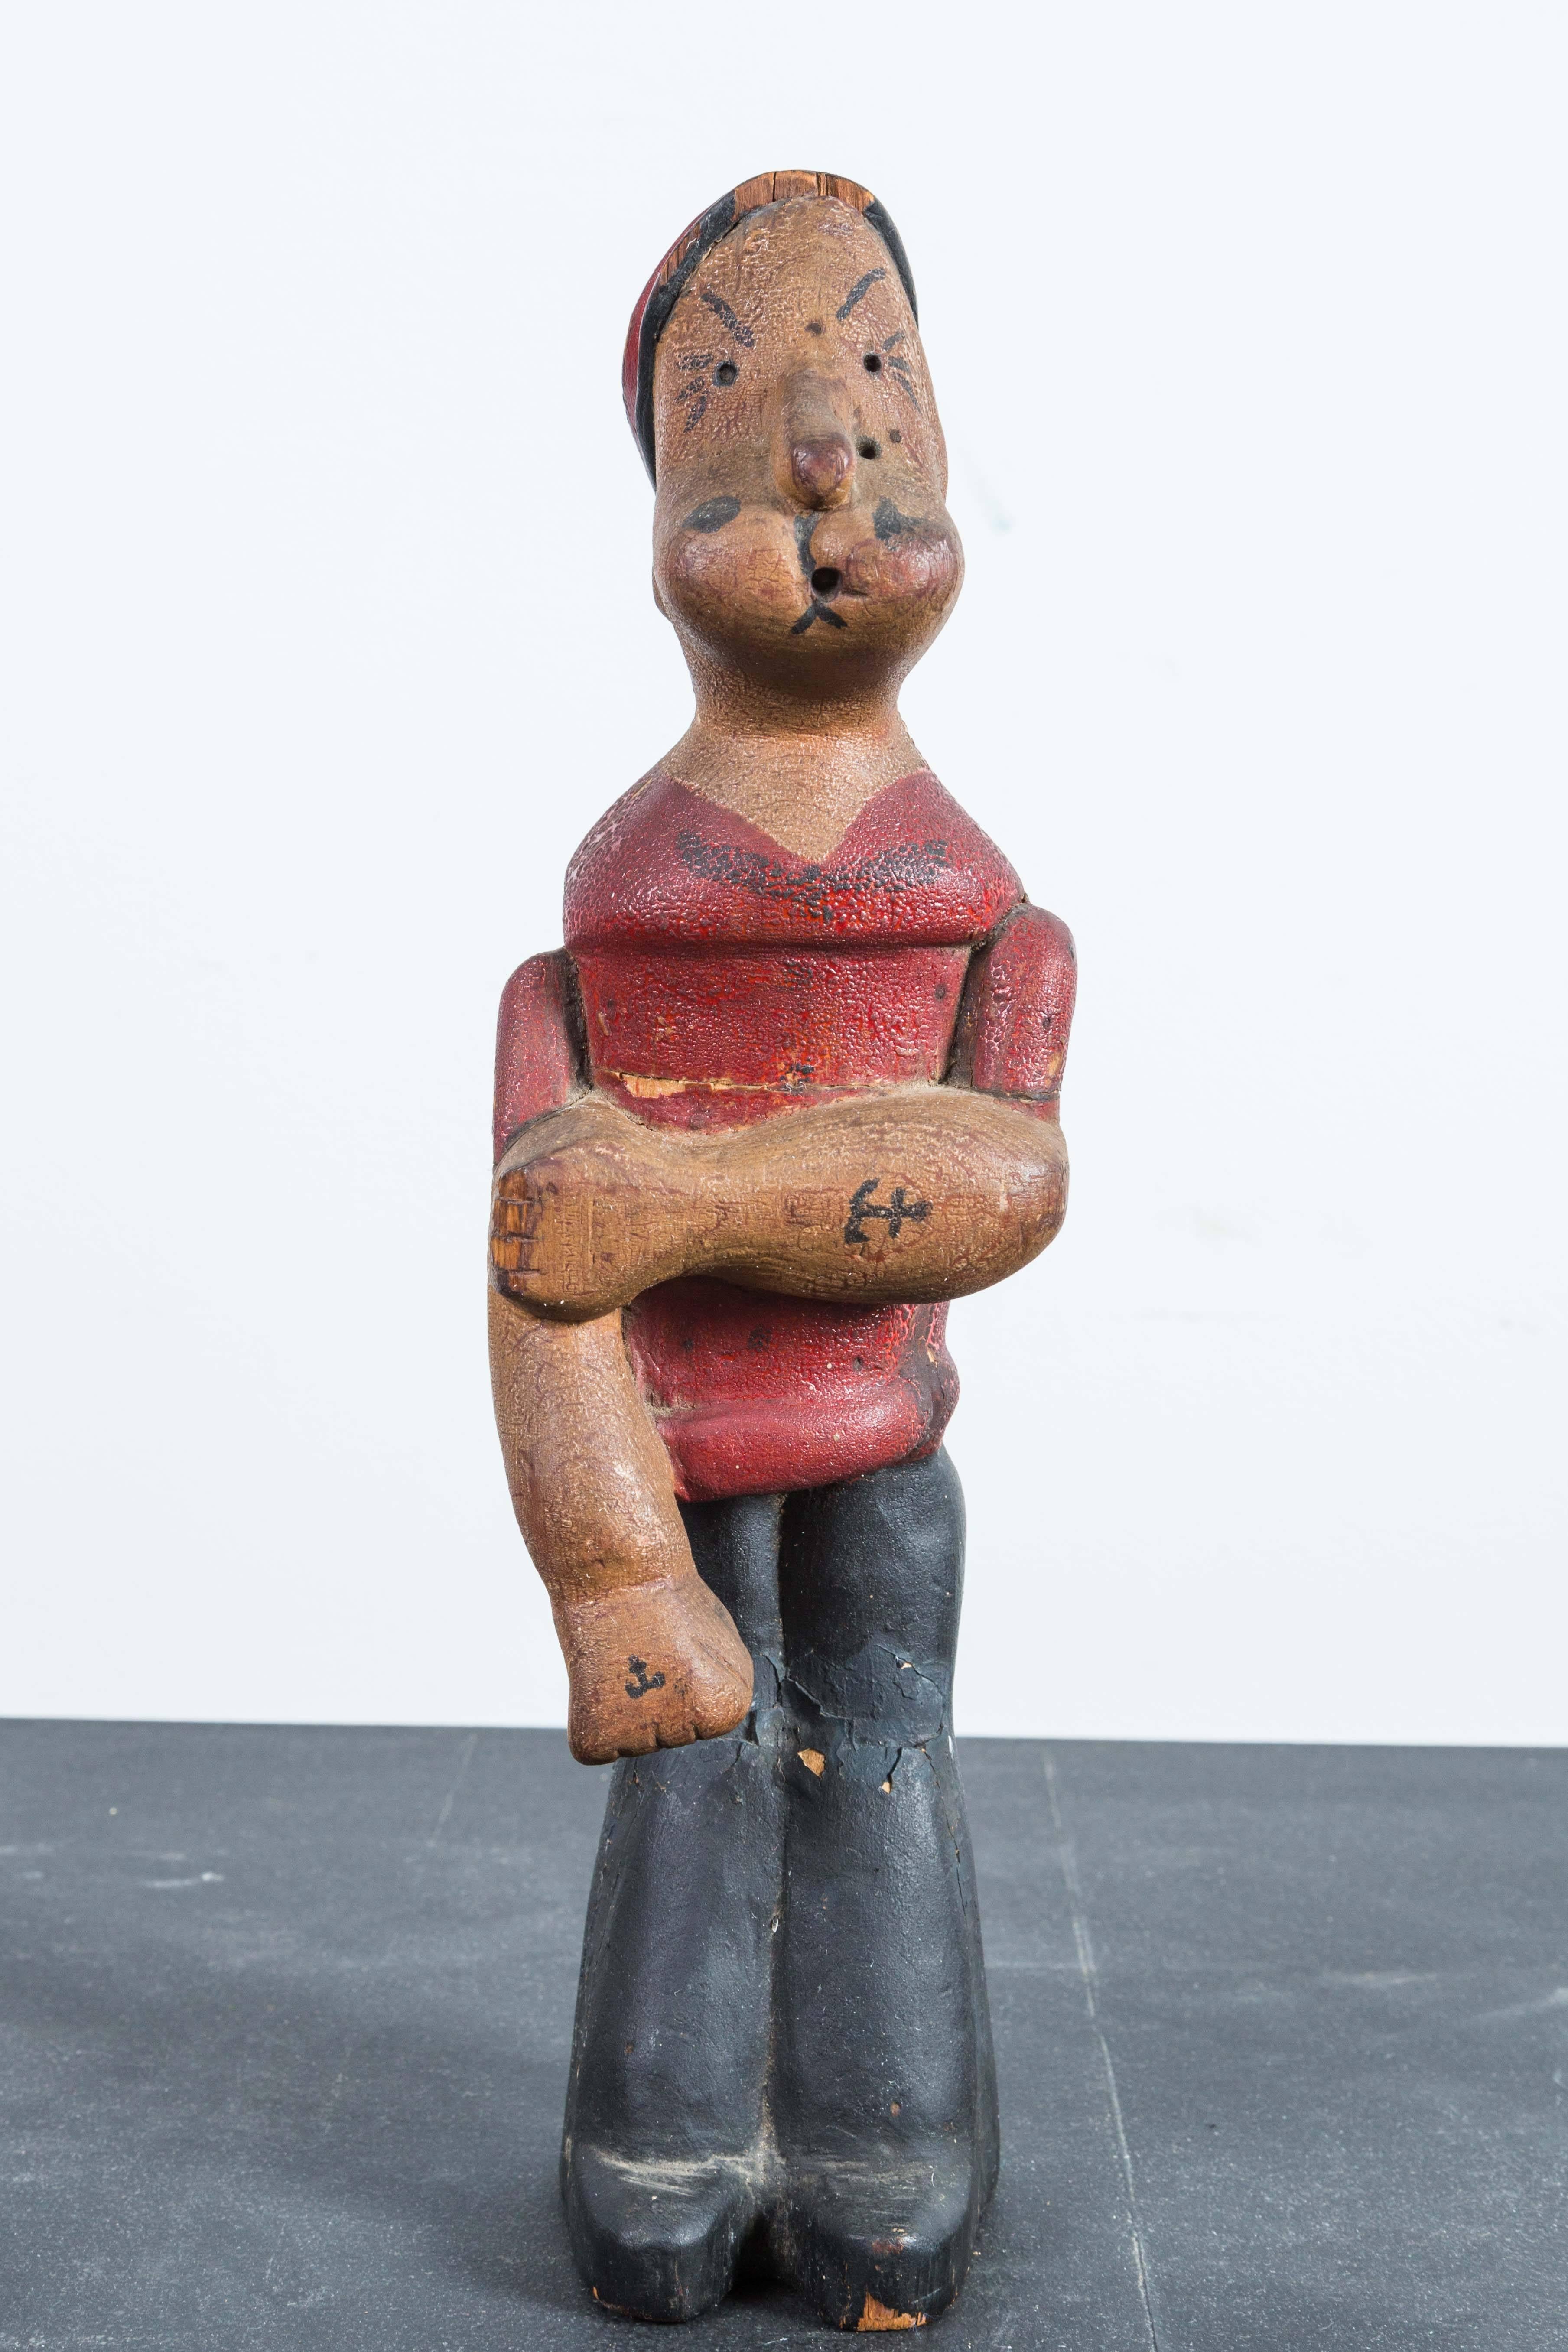 Vieille figurine de Popeye. Bois sculpté à la main avec une étonnante surface de peinture alligatorisée, avec des tatouages d'ancre sur l'avant-bras. Créé à partir de trois pièces de bois sculpté.